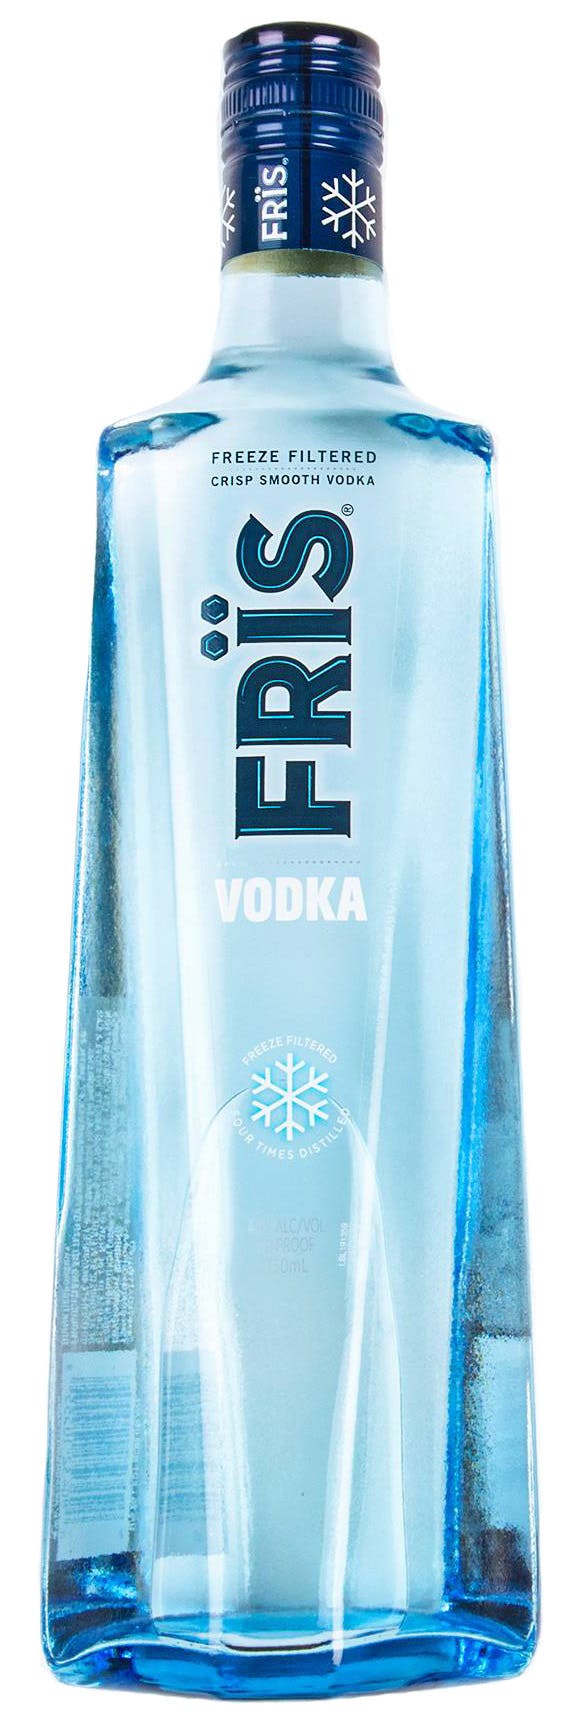 fris-vodka-50ml-central-avenue-liquors